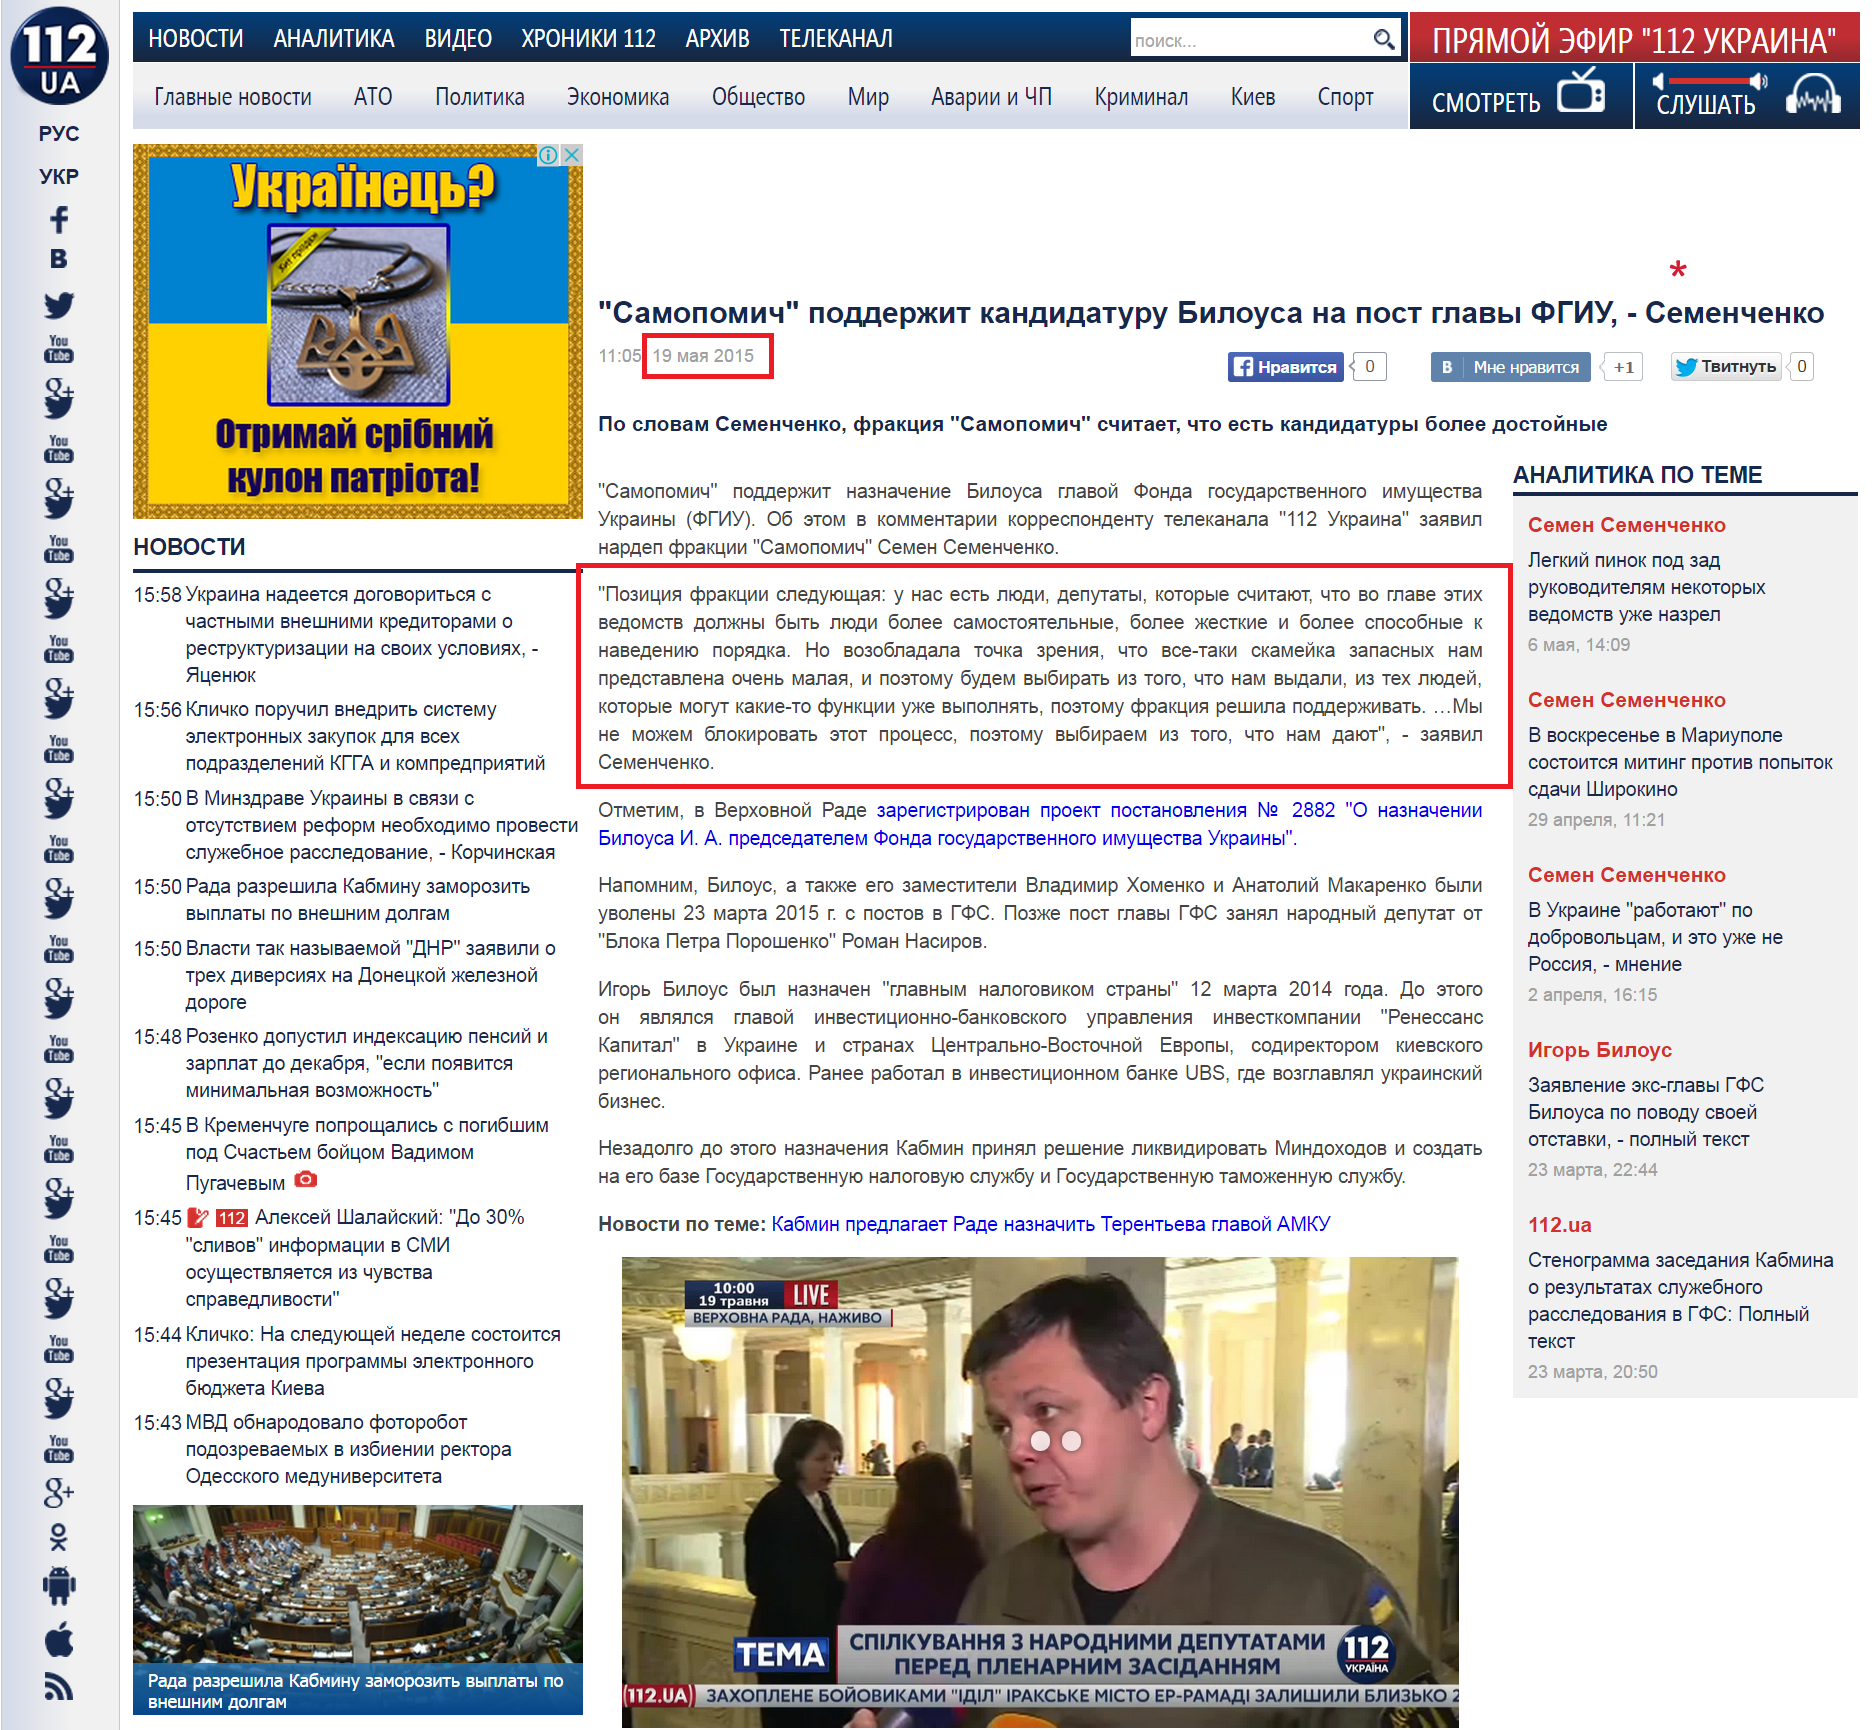 http://112.ua/glavnye-novosti/samopomich-podderzhit-kandidaturu-bilousa-na-post-glavy-fgiu-semenchenko-230037.html